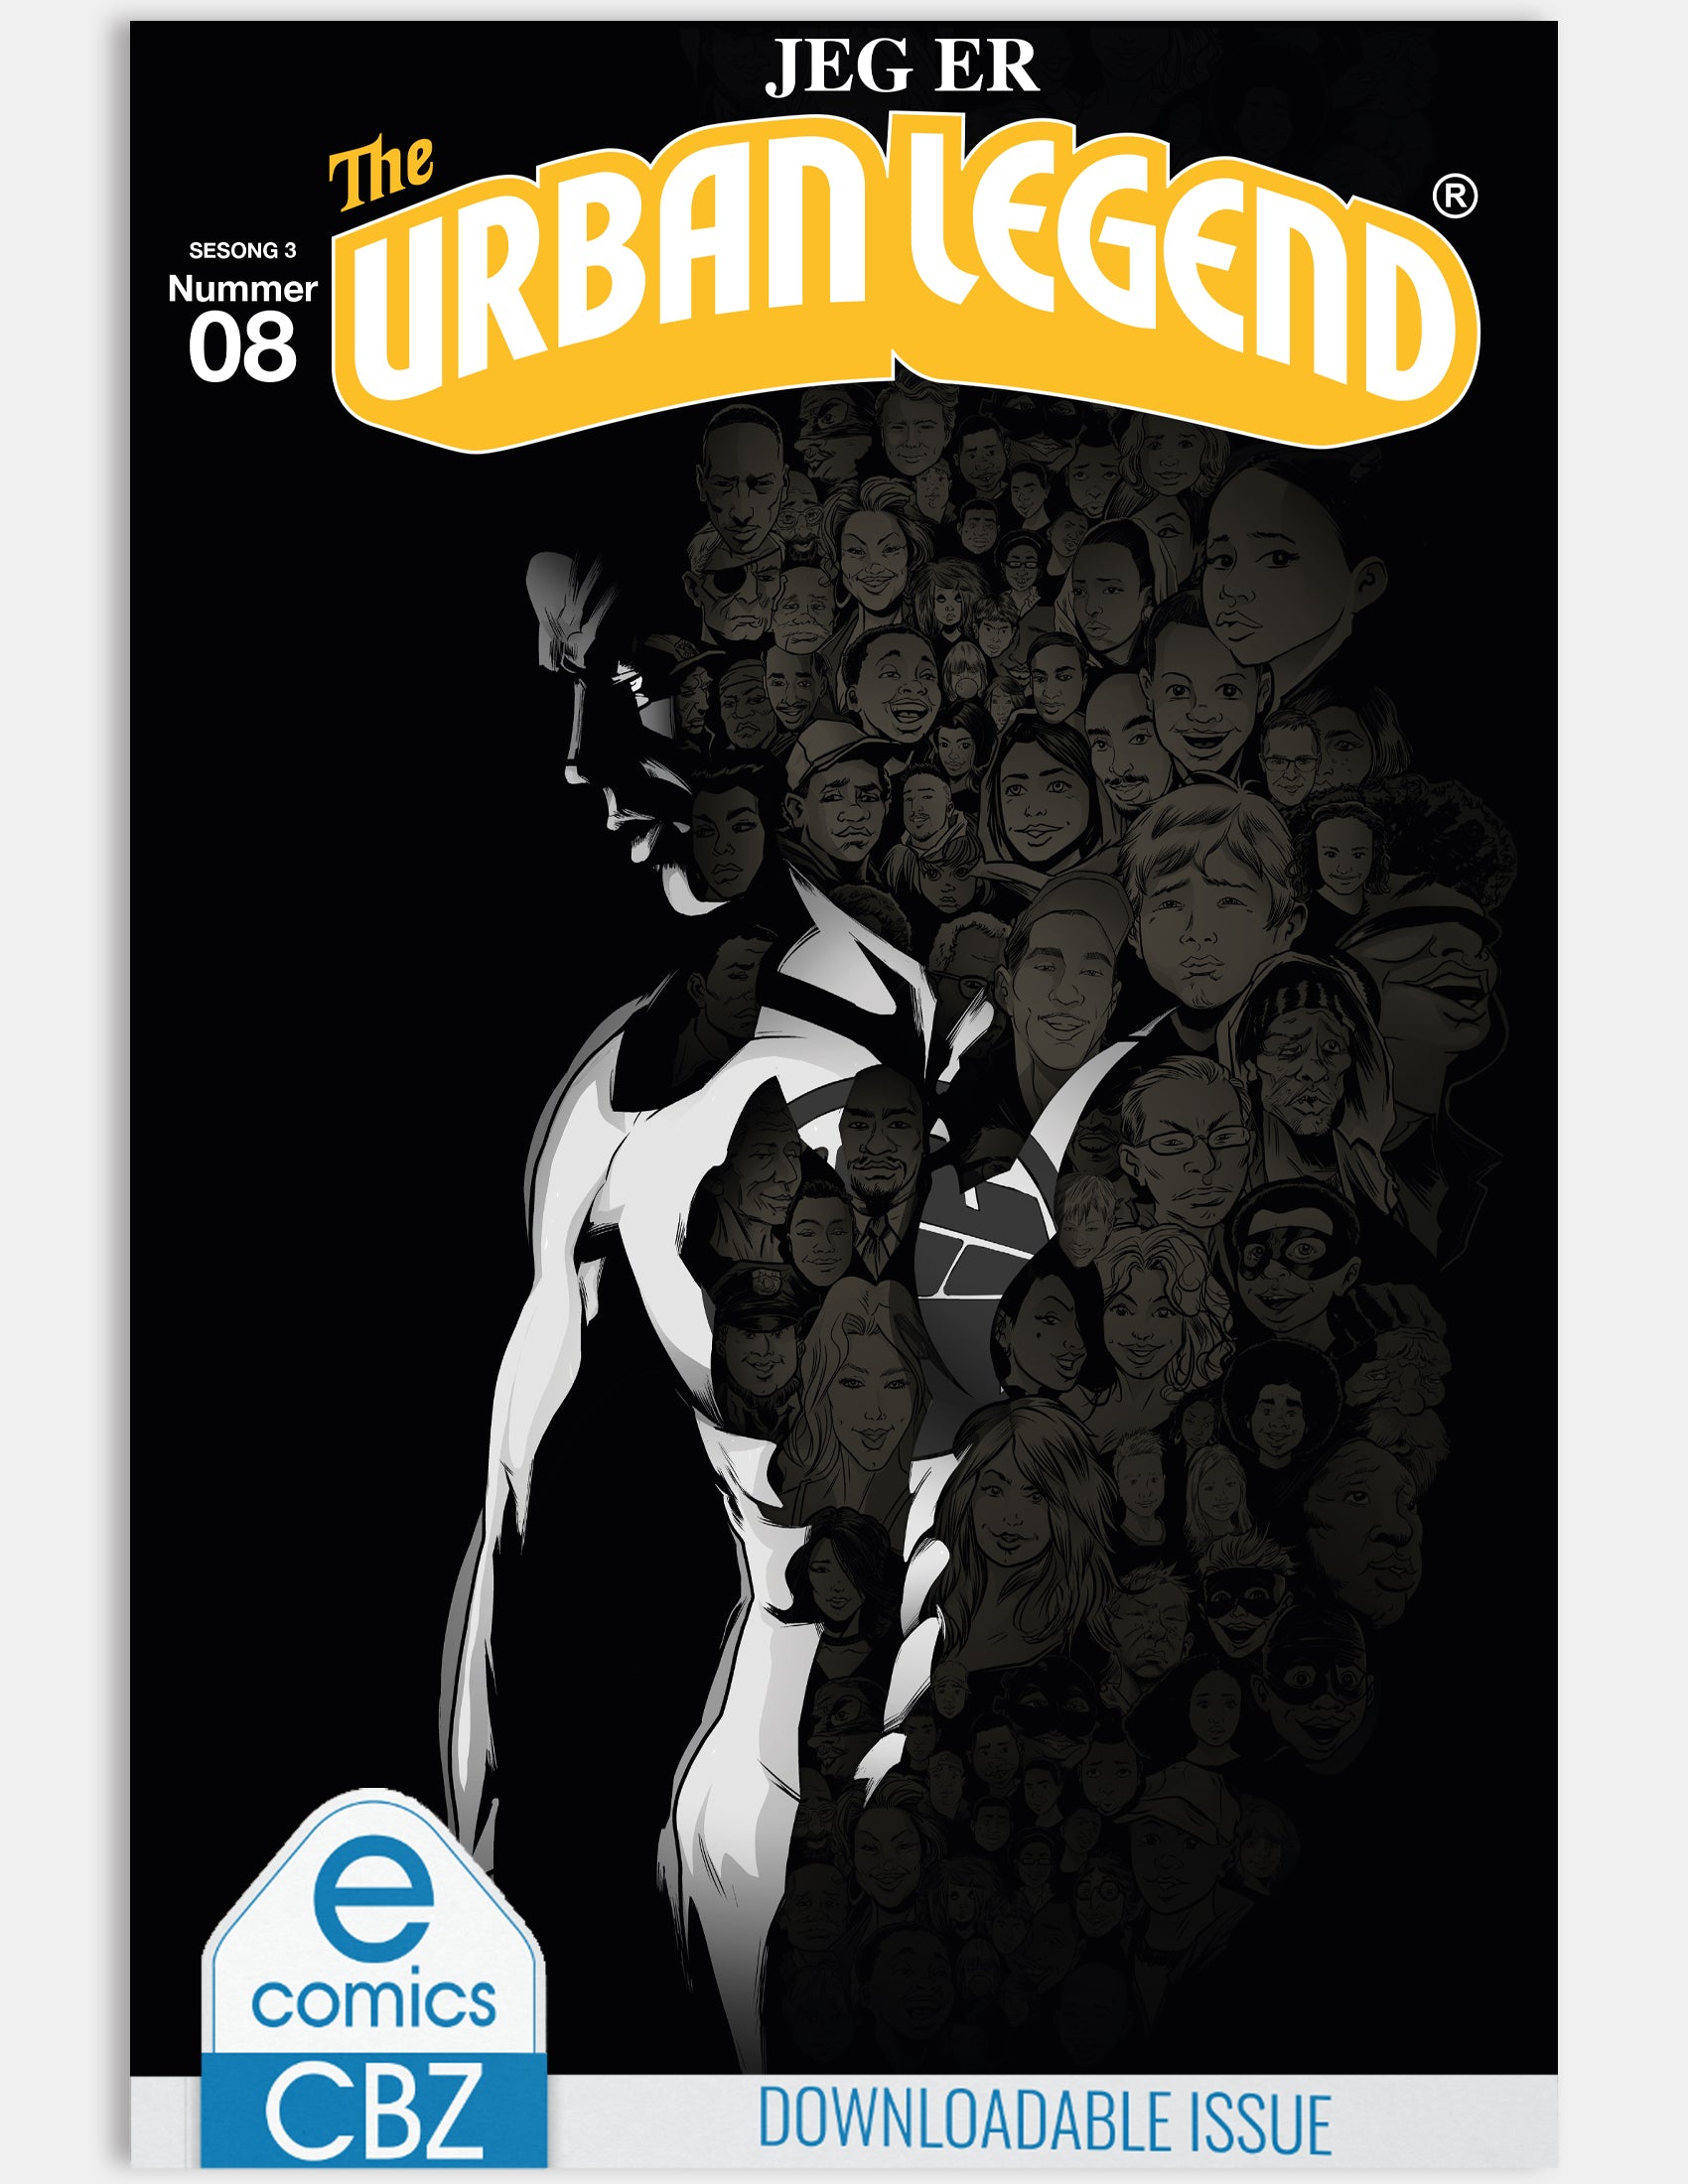 The Urban Legend - I am the urban legend (Issue 8 - Season 3) - Digital issue